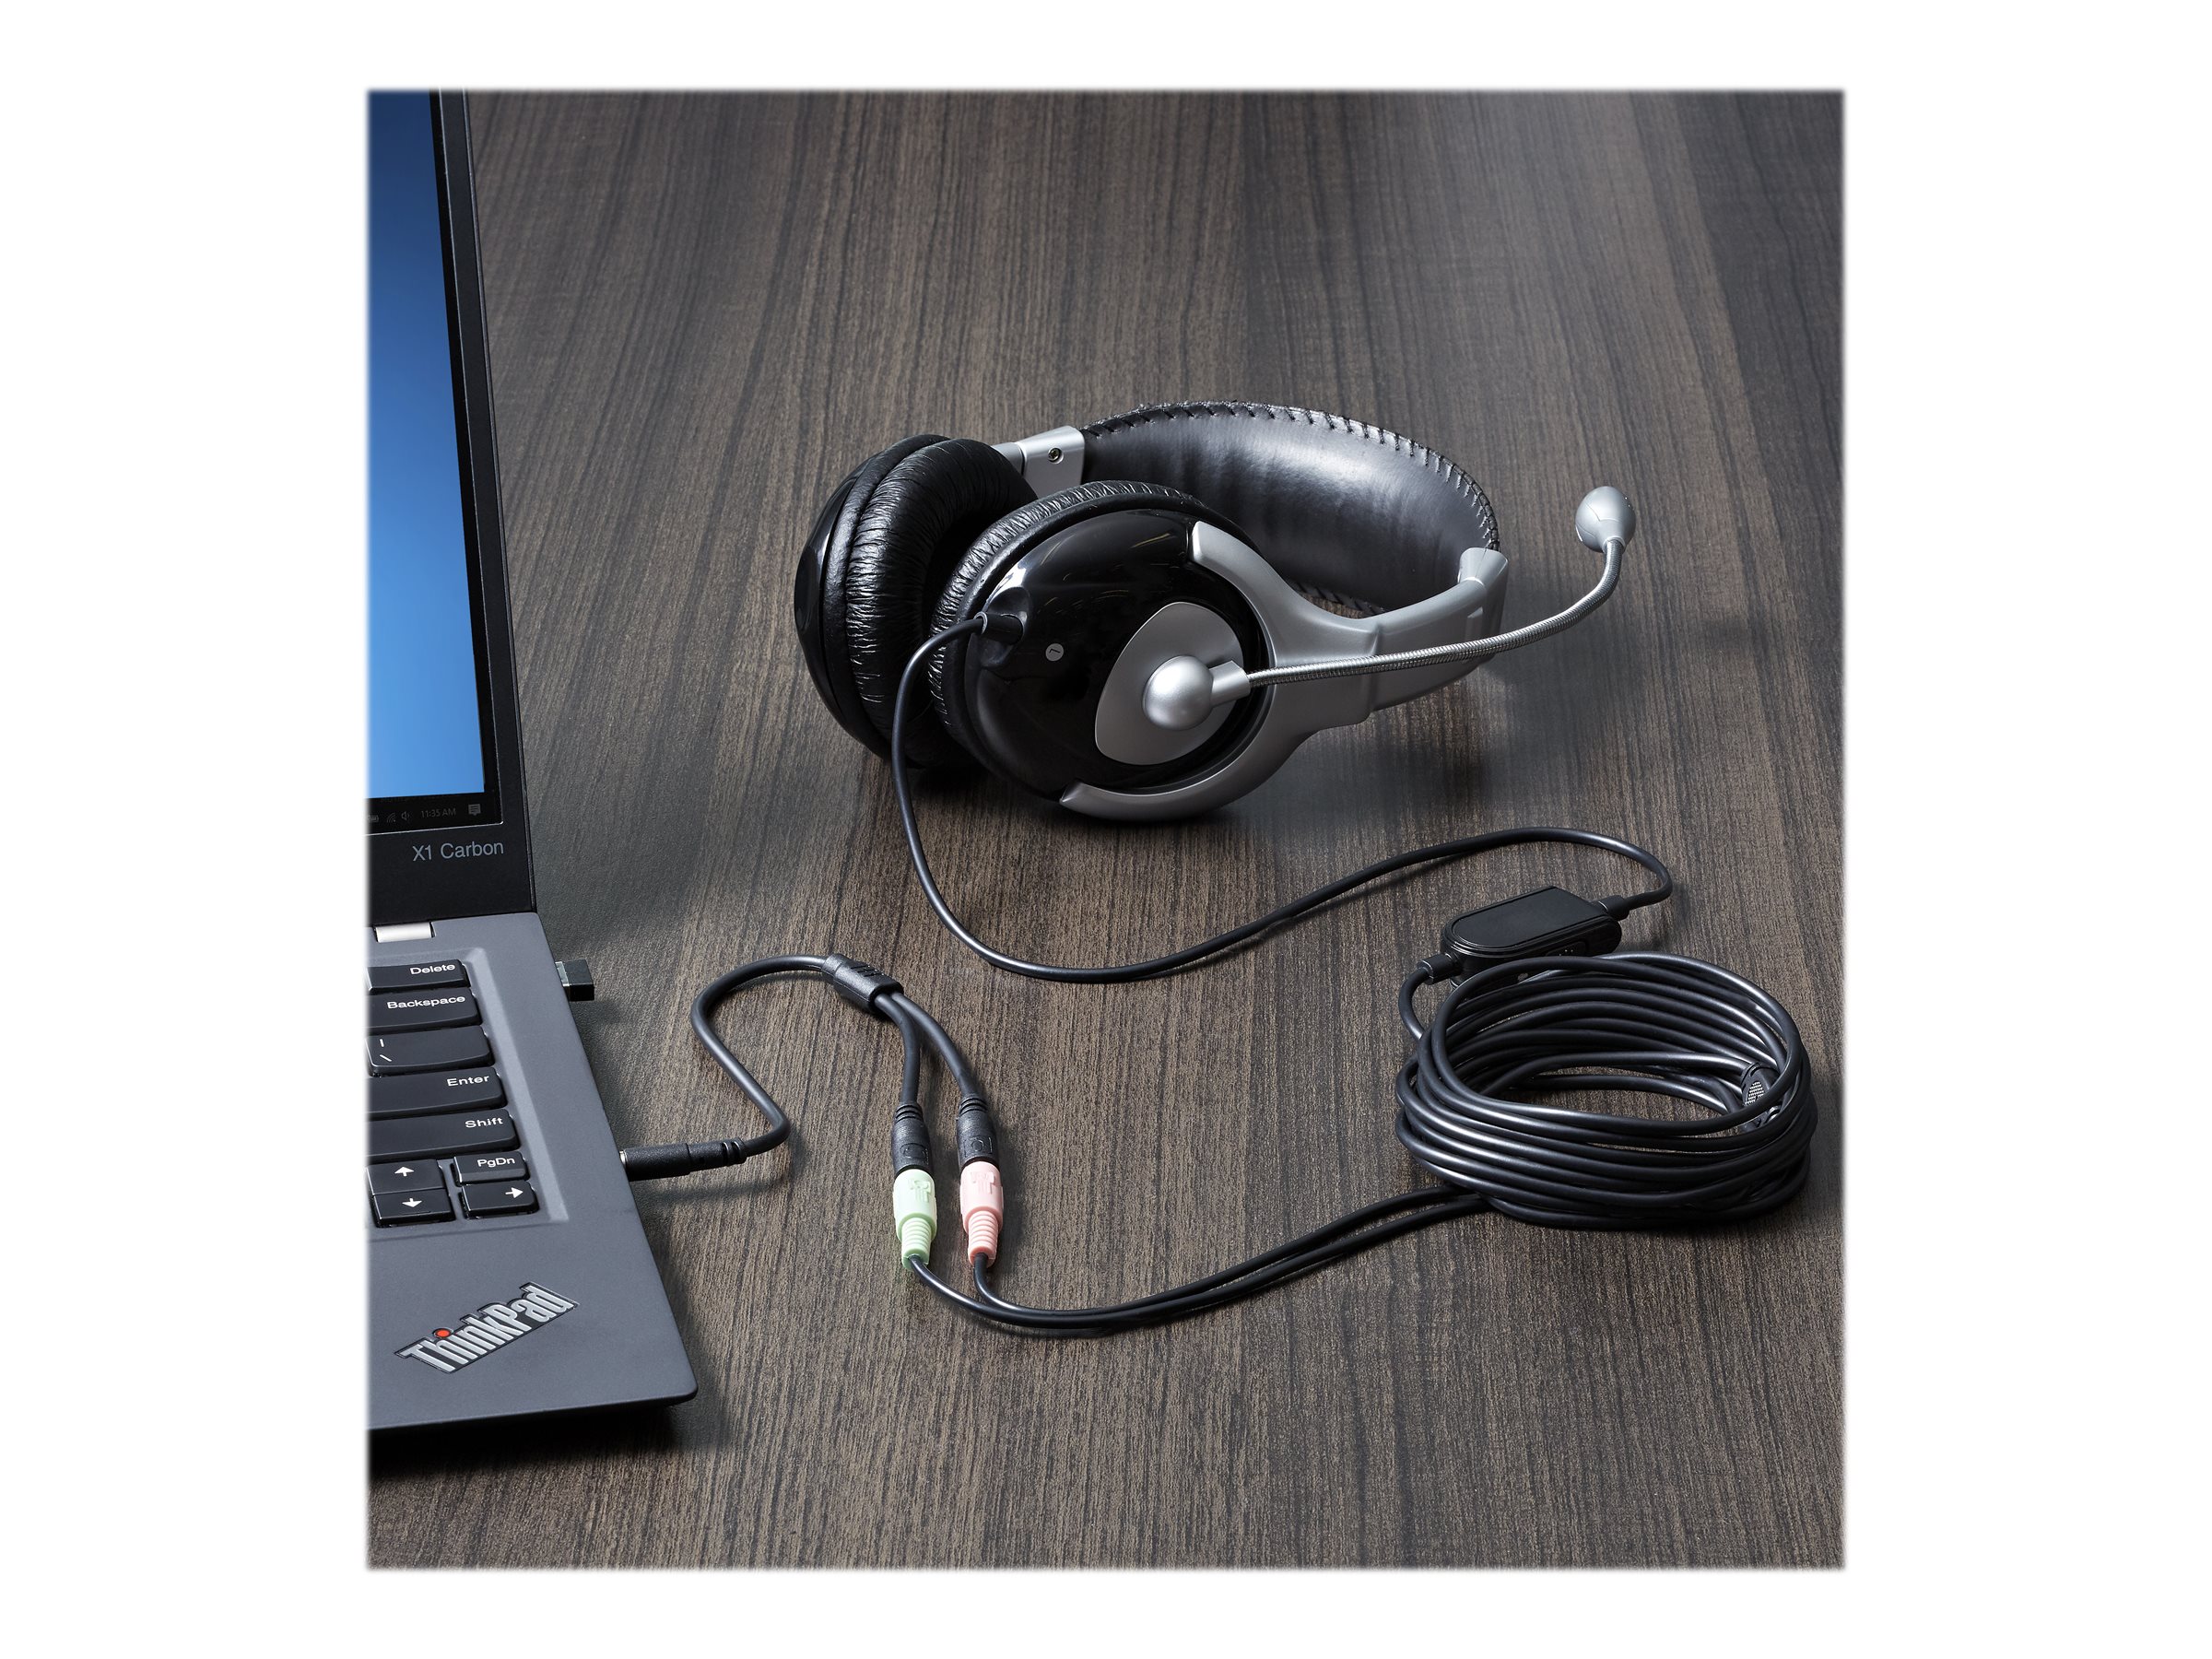 StarTech.com 3,5mm Klinke Audio Y-Kabel - 4 pol. auf 3 pol. Headset Adapter für Headsets mit Kopfhörer / Microphone Stecker